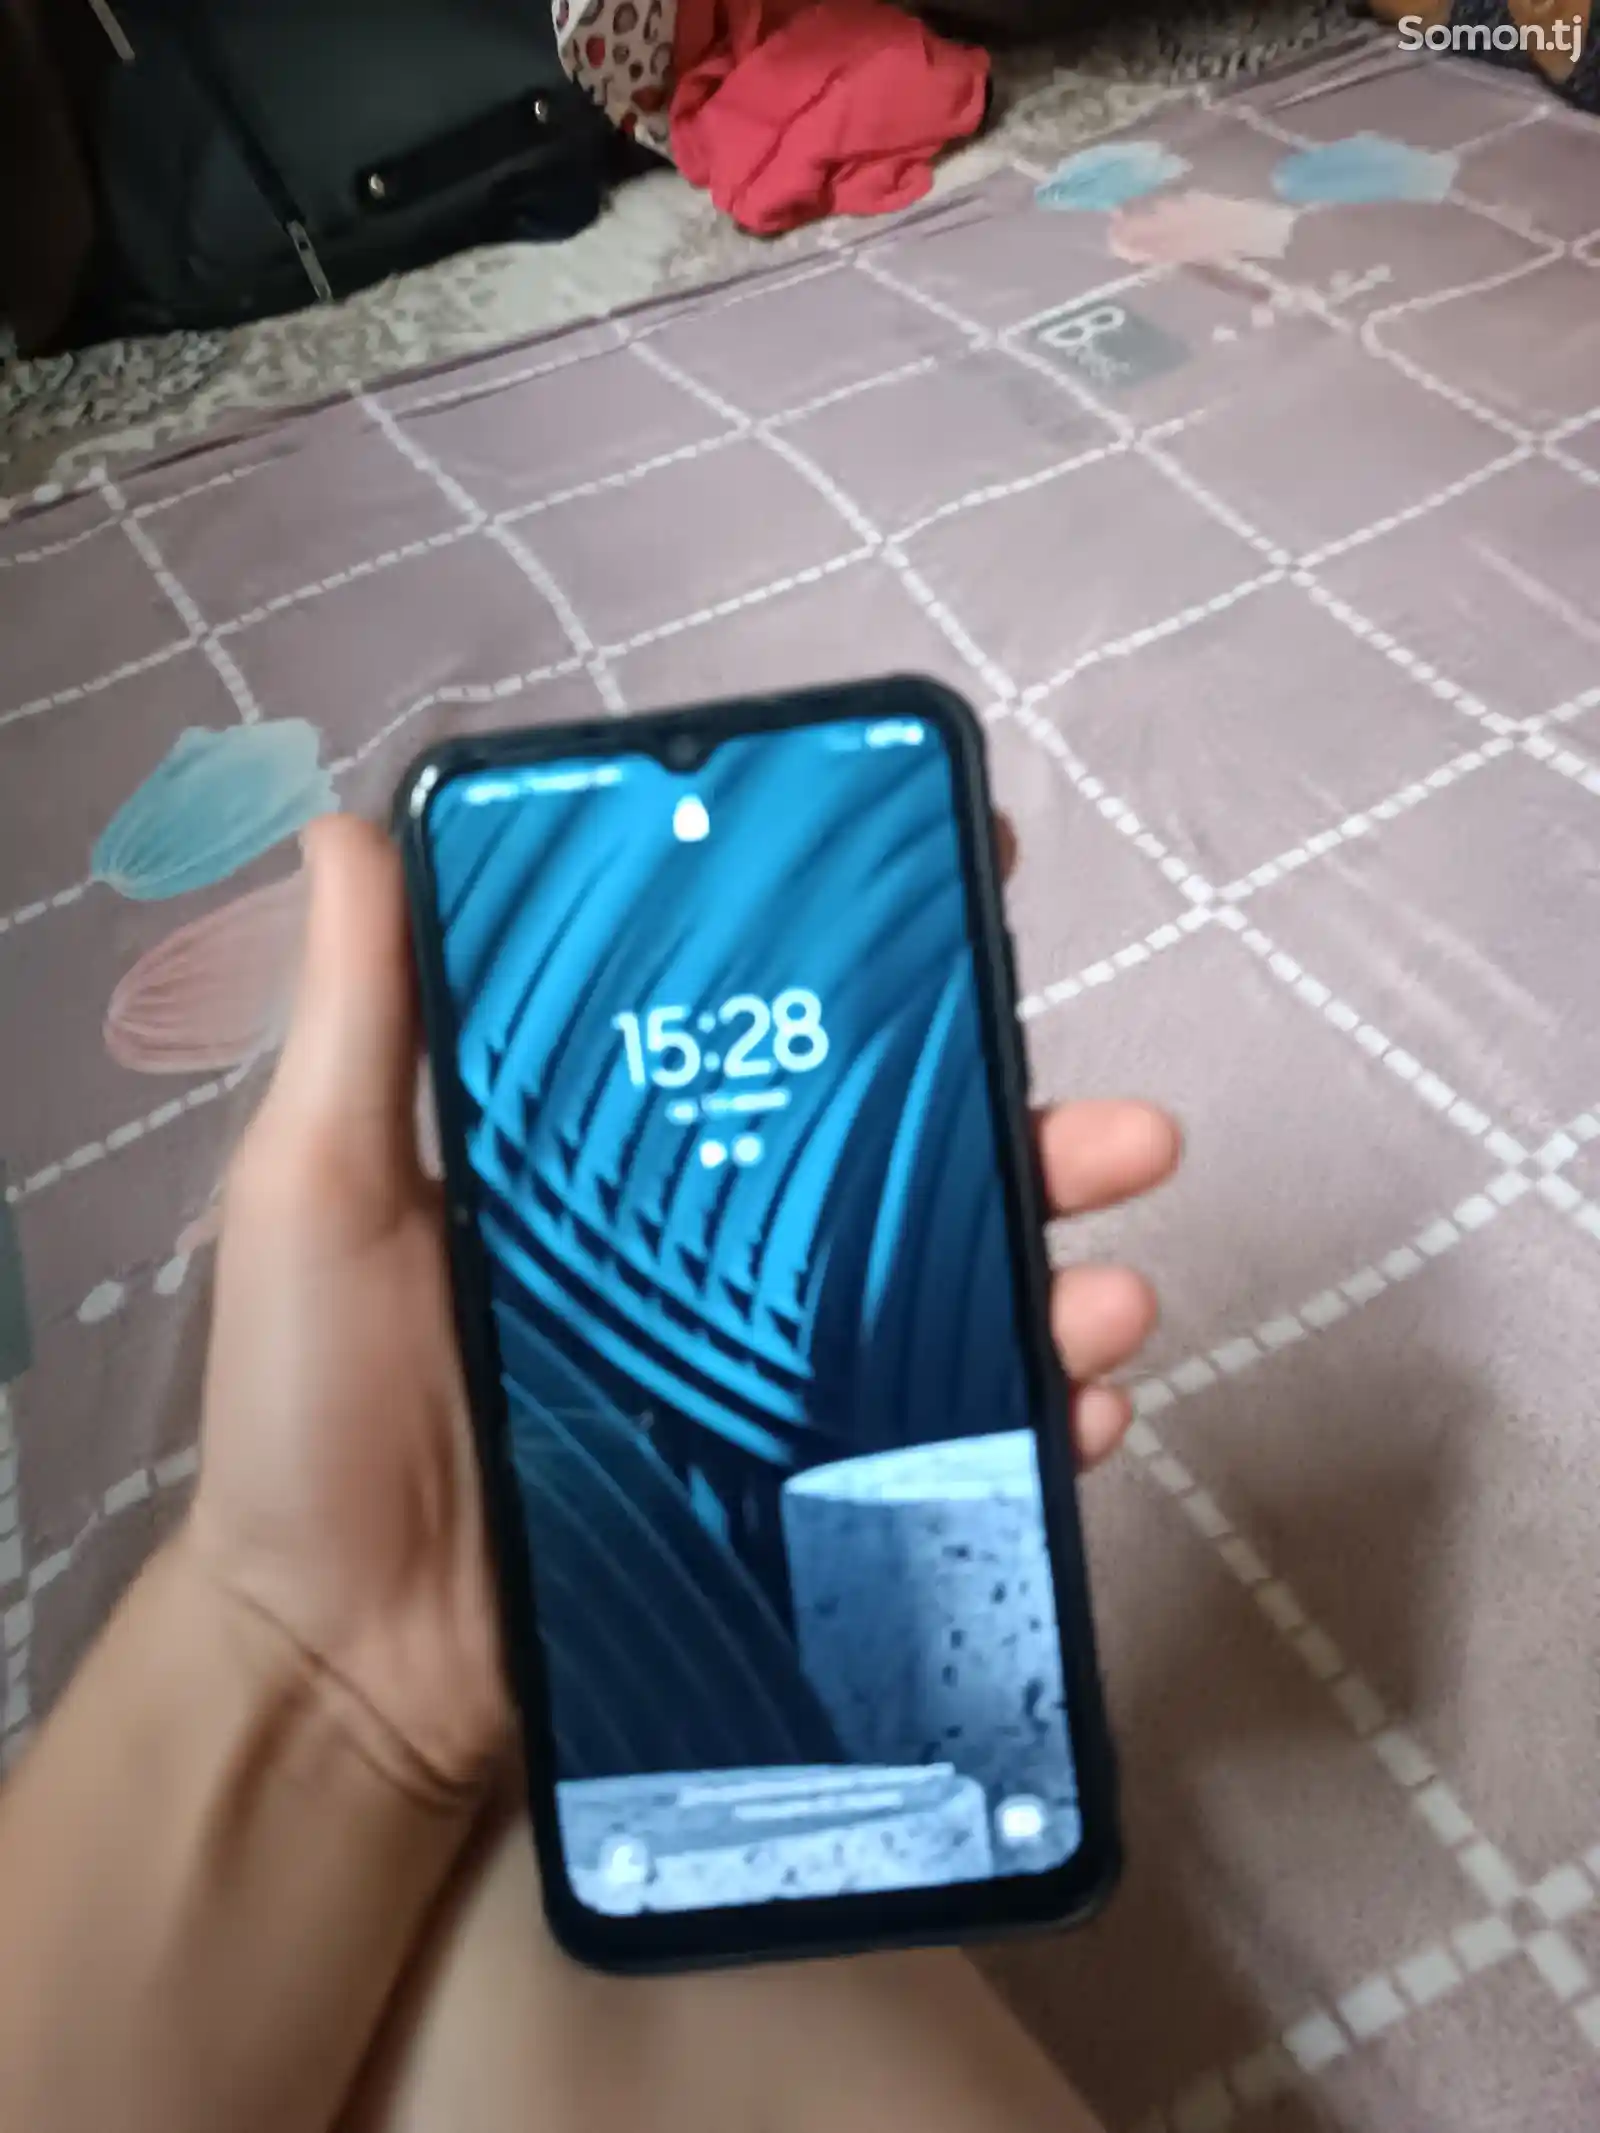 Samsung Galaxy A03-2